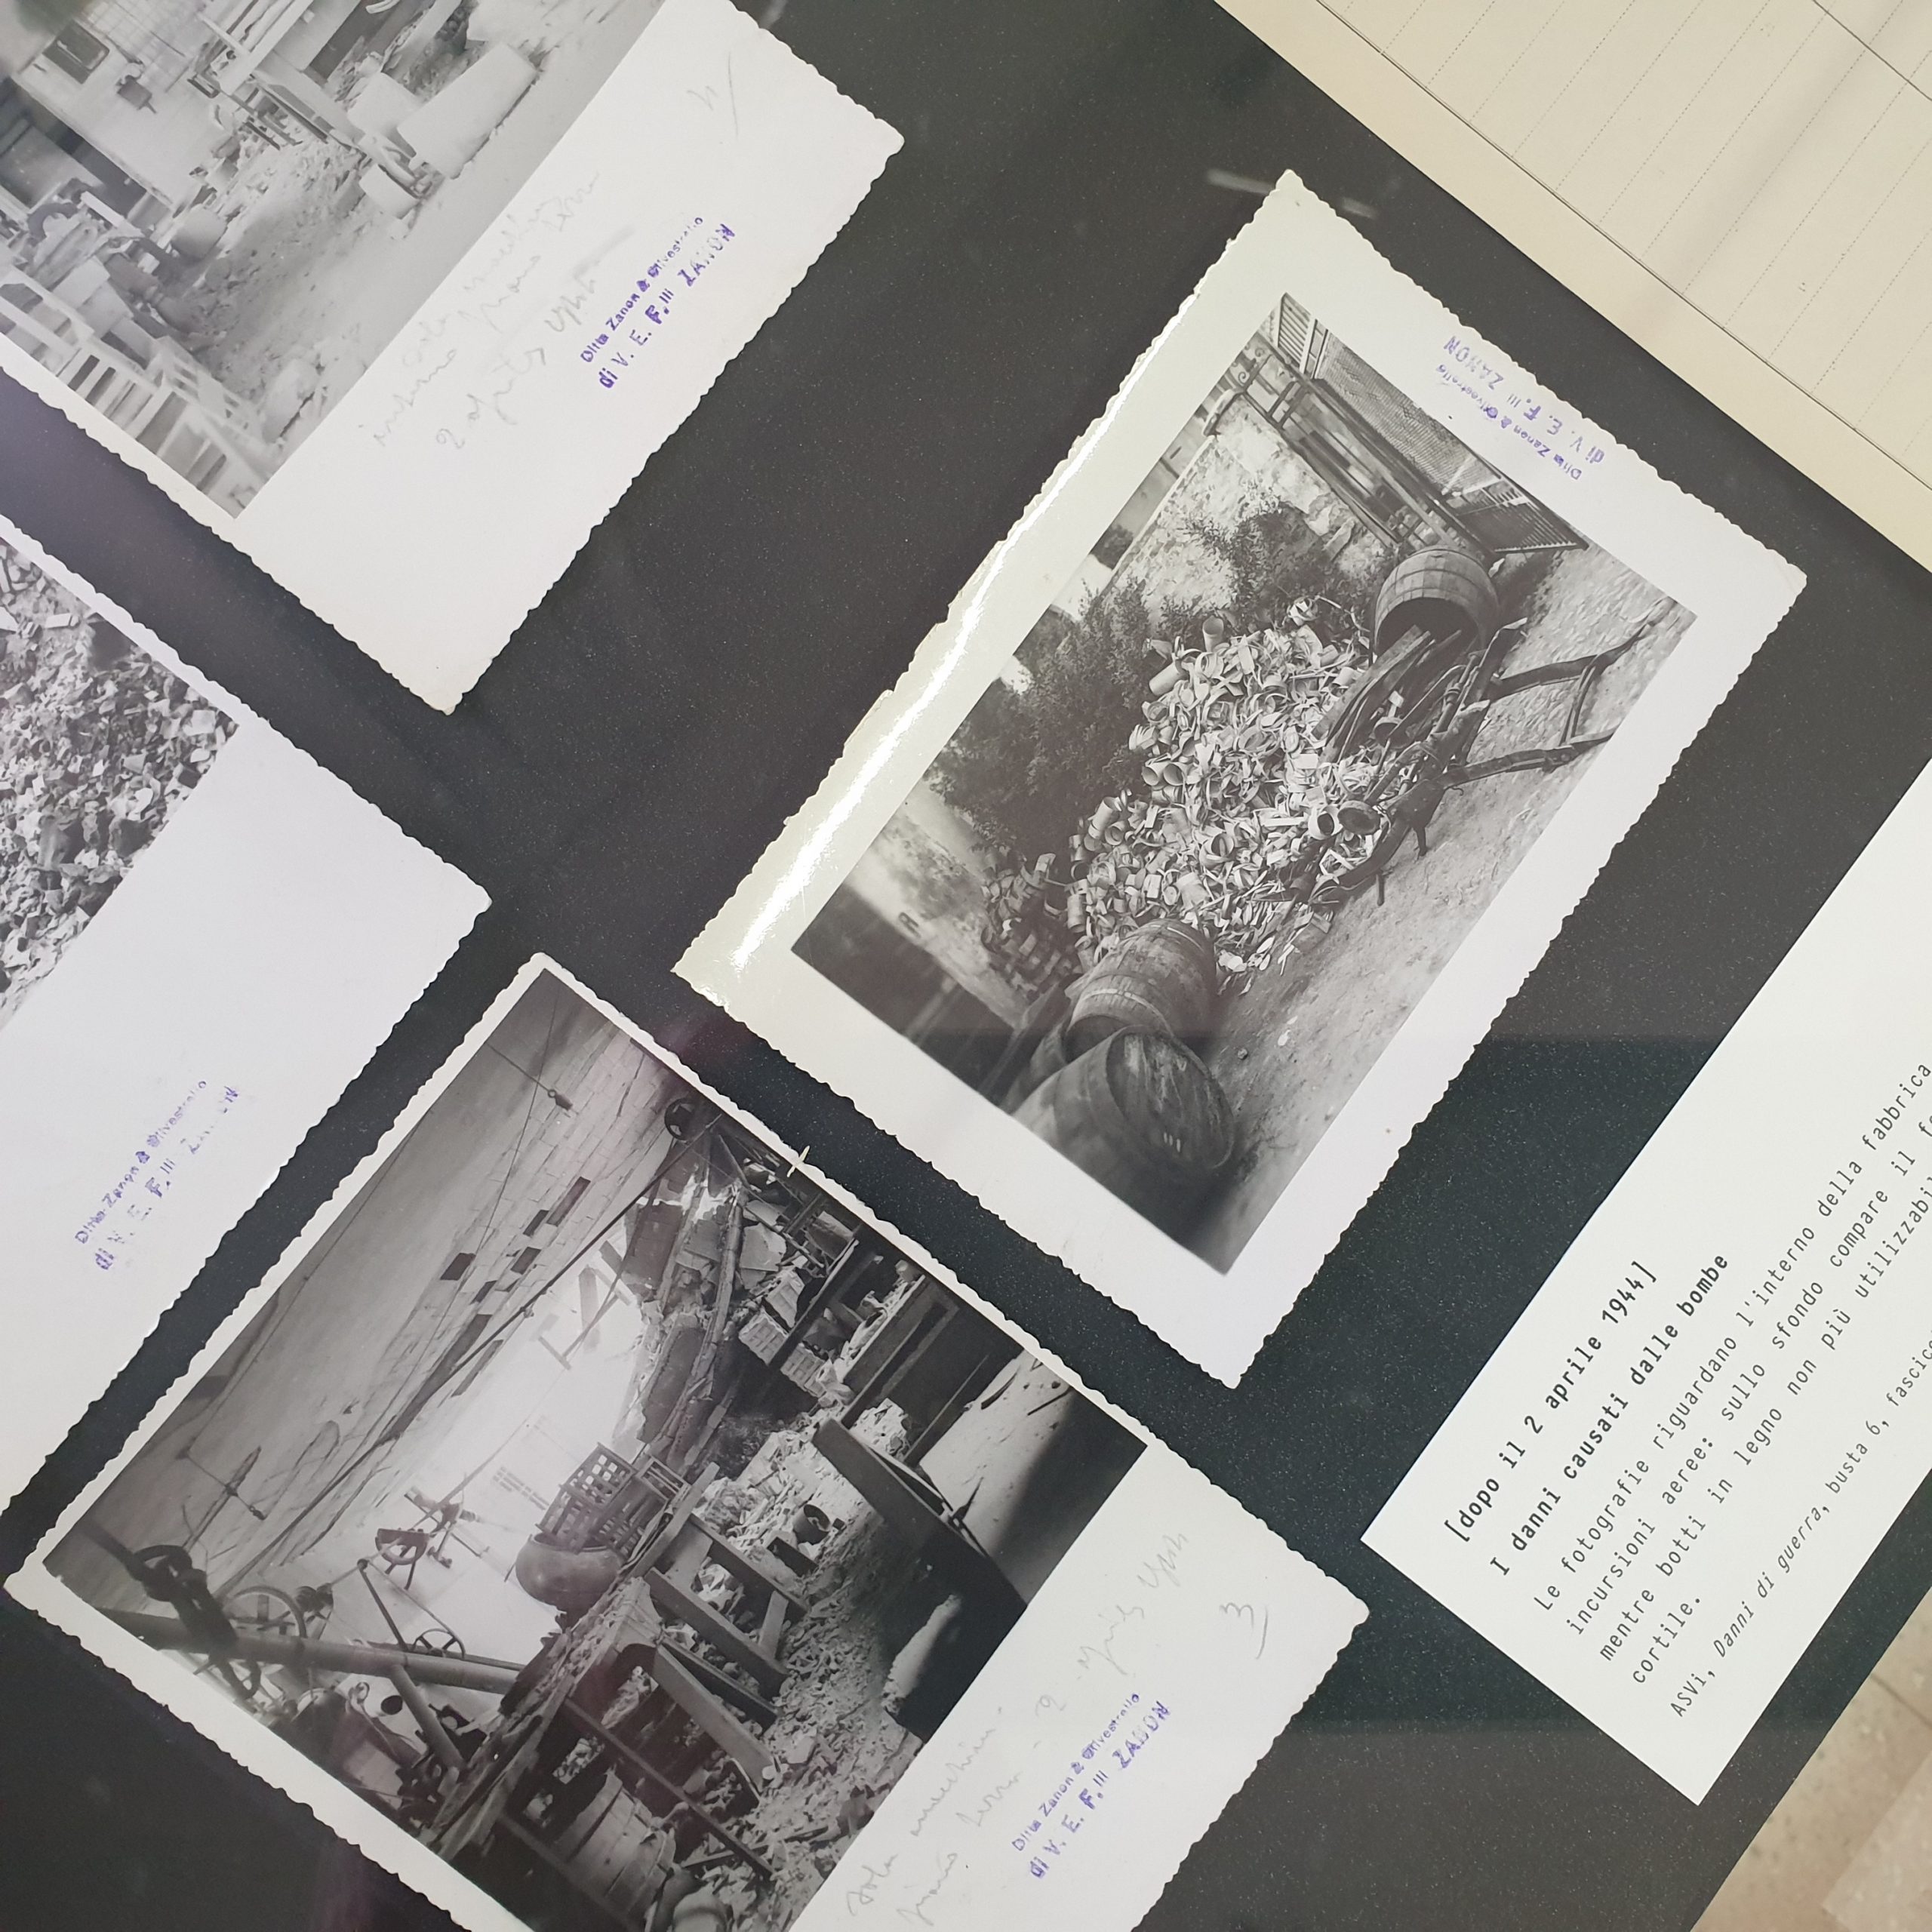 Cartellone con stampe di foto dei danni dai bombardamenti alla ditta Zanon di Vicenza